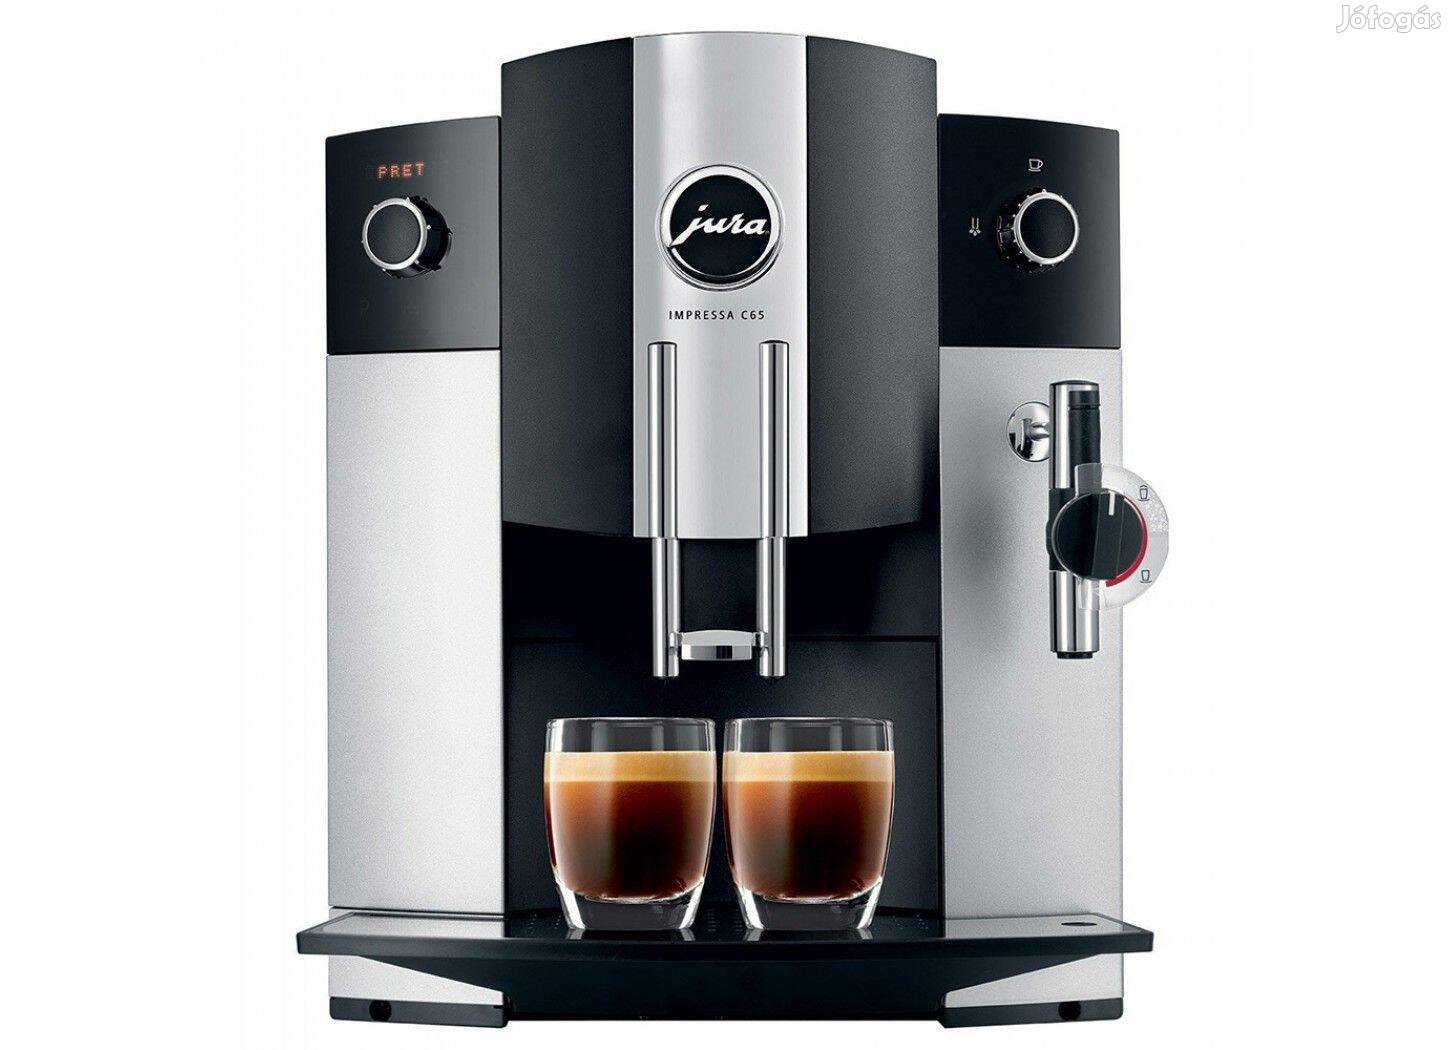 Jura Impressa C65 darálós kávéautomata, kávéfőző eladó garanciával